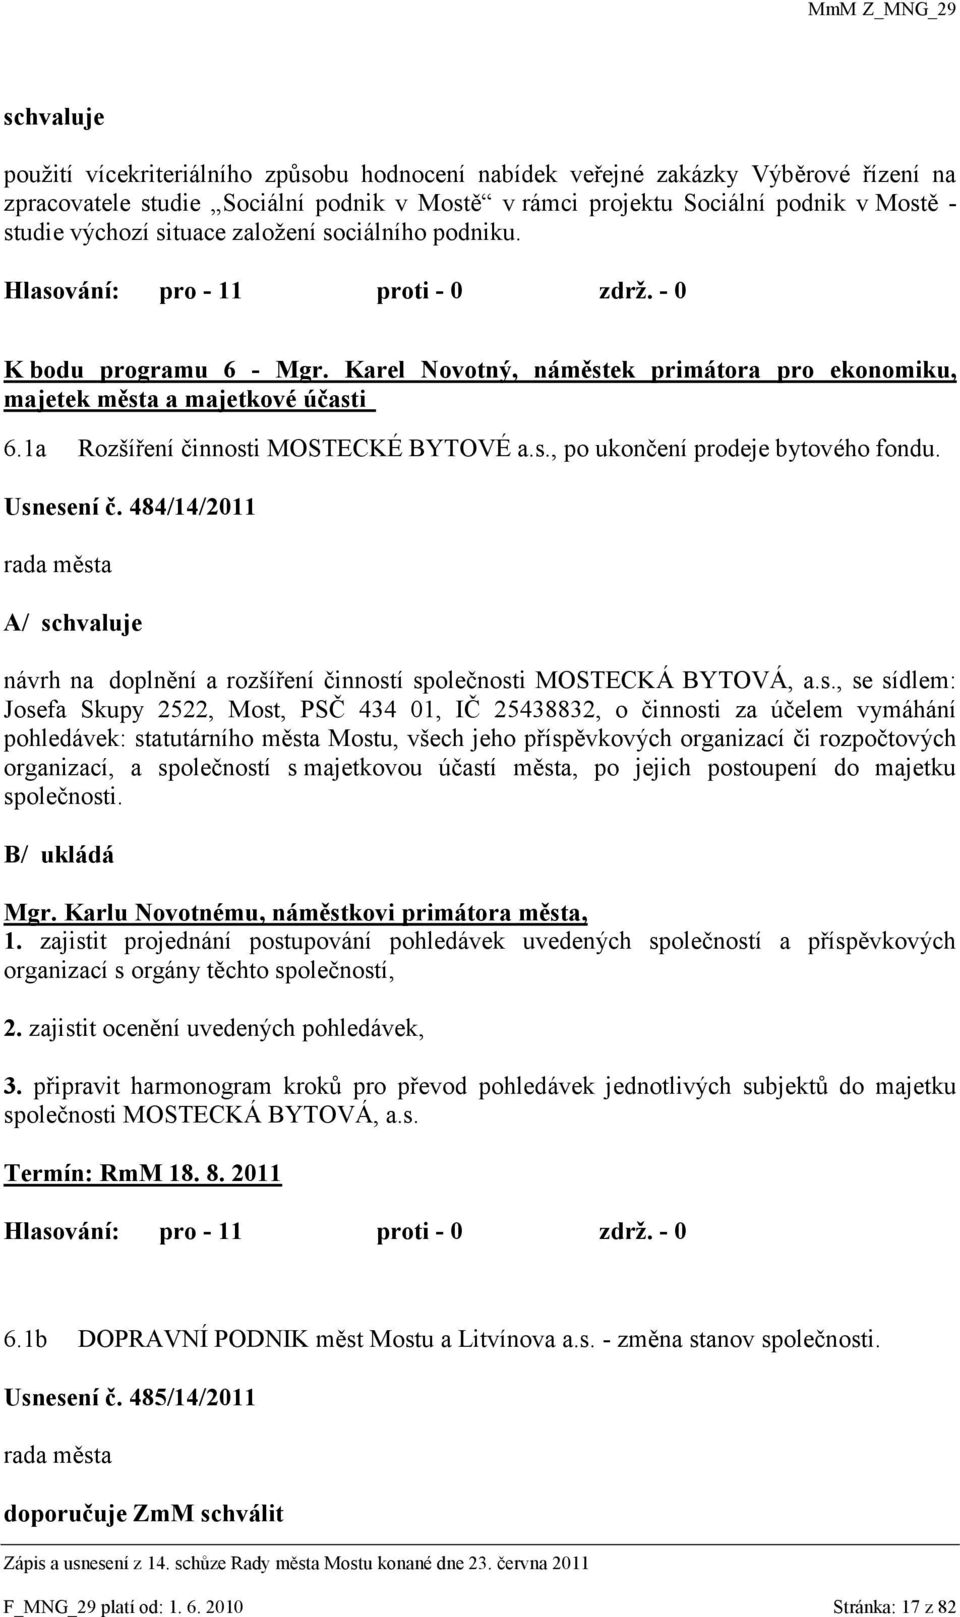 Usnesení č. 484/14/2011 A/ schvaluje návrh na doplnění a rozšíření činností společnosti MOSTECKÁ BYTOVÁ, a.s., se sídlem: Josefa Skupy 2522, Most, PSČ 434 01, IČ 25438832, o činnosti za účelem